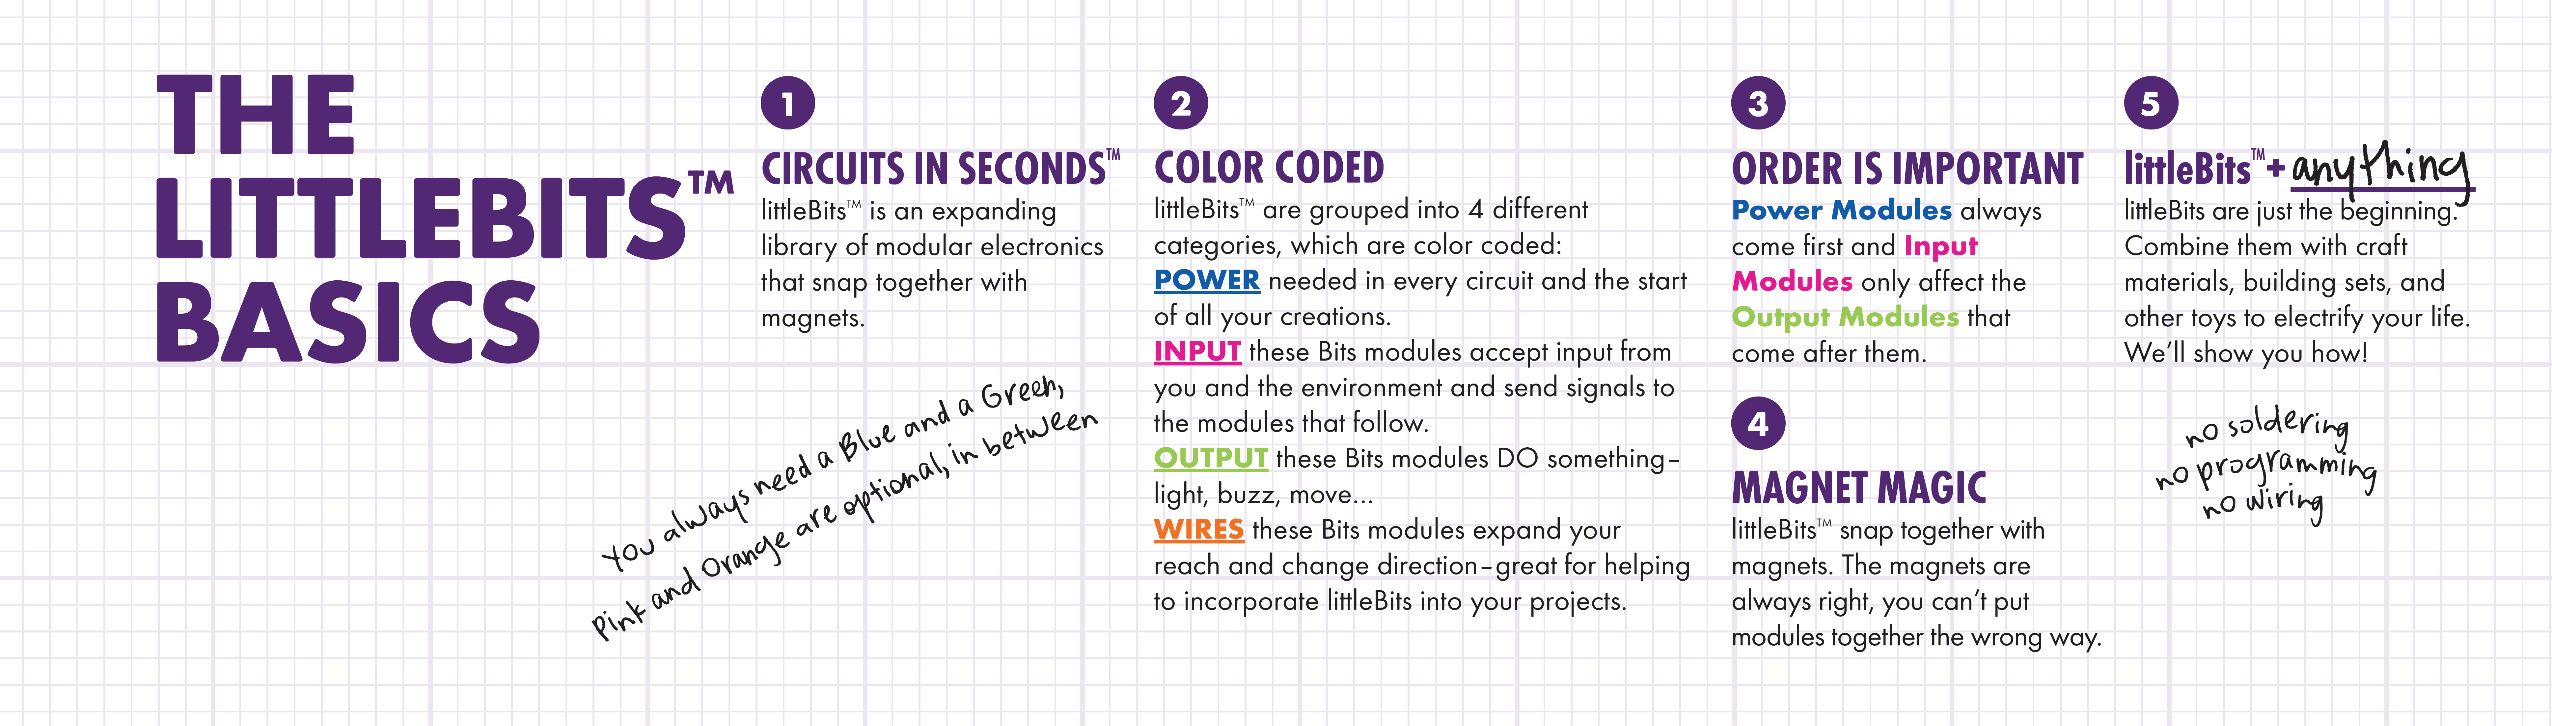 ΤΑ ΒΑΣΙΚΑ ΣΤΟΙΧΕΙΑ ΤΩΝ LITTLEBITS ΚΥΚΛΩΜΑΤΑ ΣΕ ΔΕΥΤΕΡΟΛΕΠΤΑ Τα LittleBits είναι μια επεκτεινόμενη βιβλιοθήκη ηλεκτρονικών μονάδων που κολλούν μεταξύ τους με μαγνήτες ΧΡΩΜΑΤΙΚΟΣ ΚΩΔΙΚΑΣ Τα LittleBits